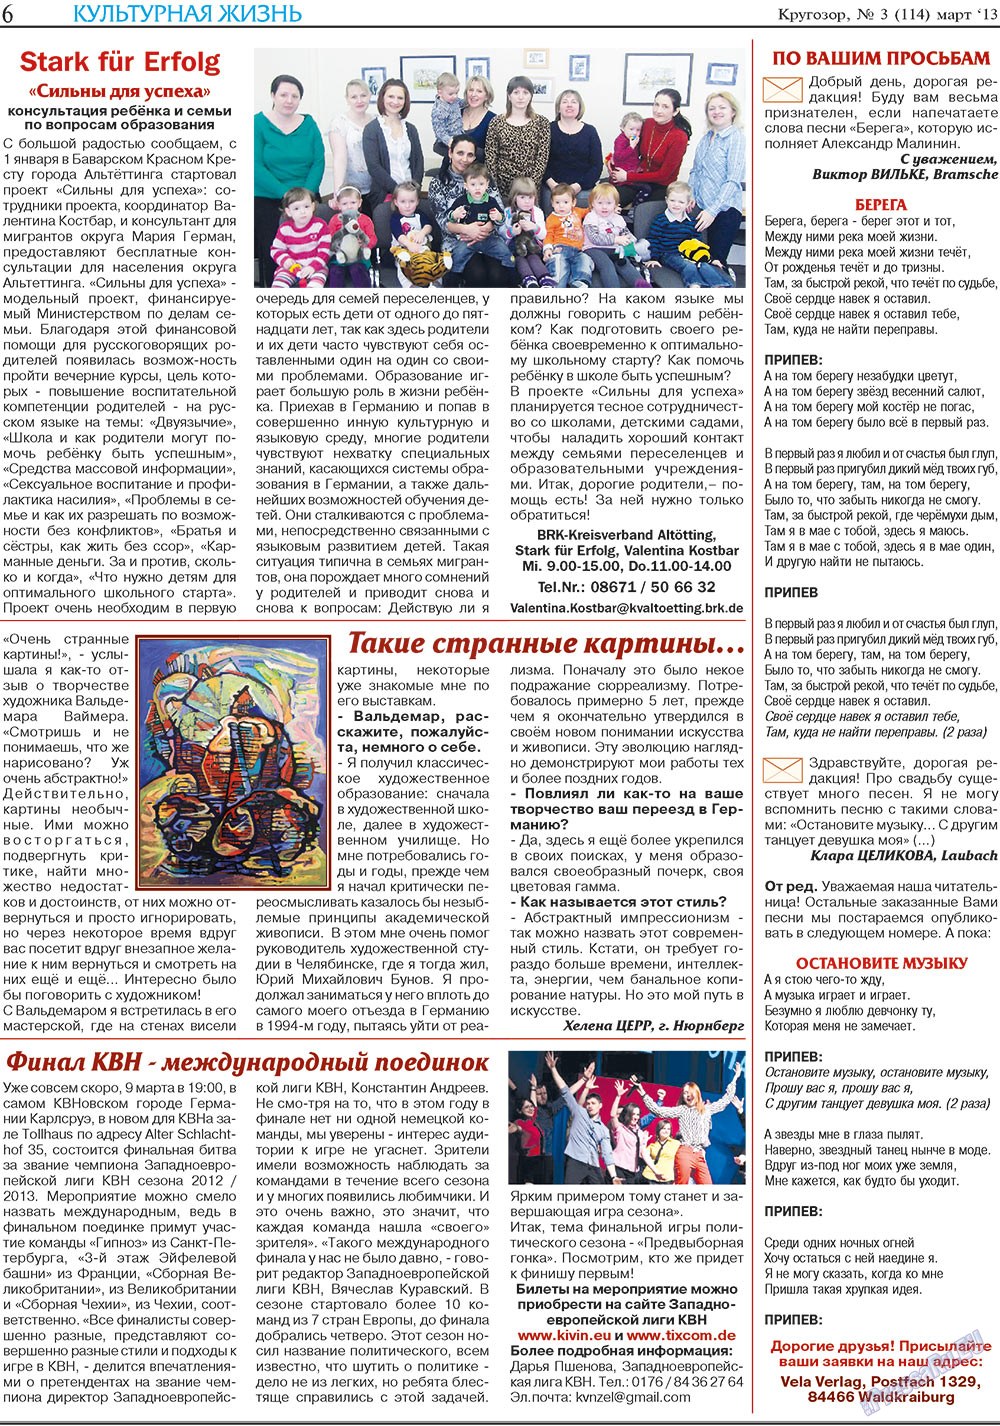 Кругозор, газета. 2013 №3 стр.6